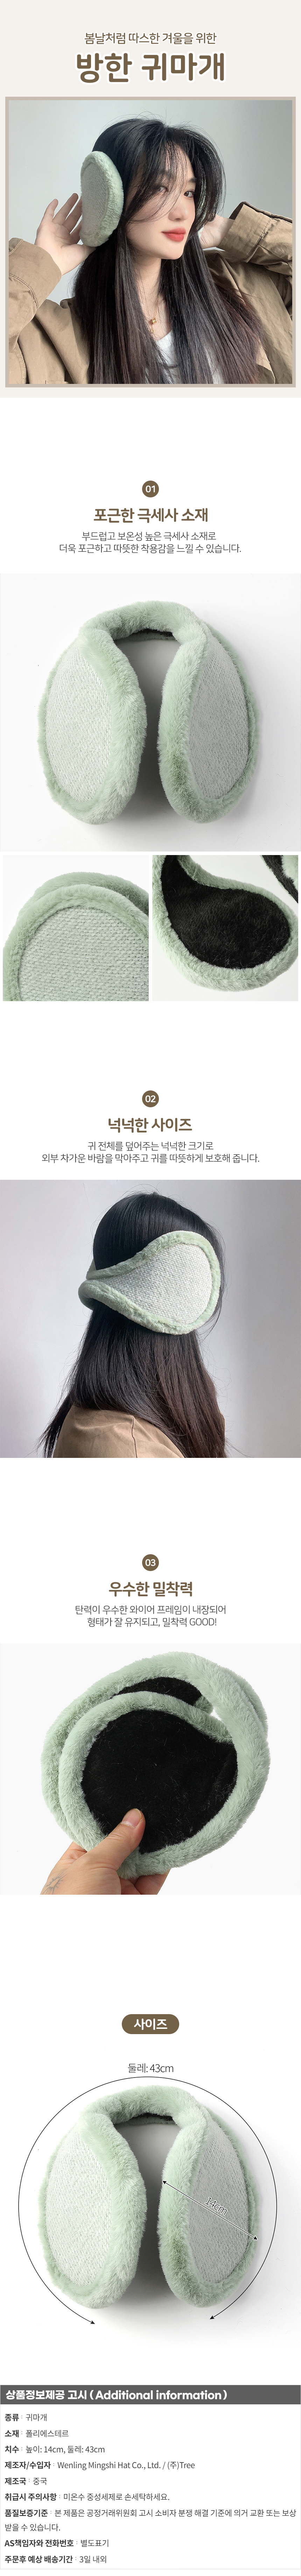 여성 귀마개 눈썰매장 단체 선물 방한 겨울 귀덮개